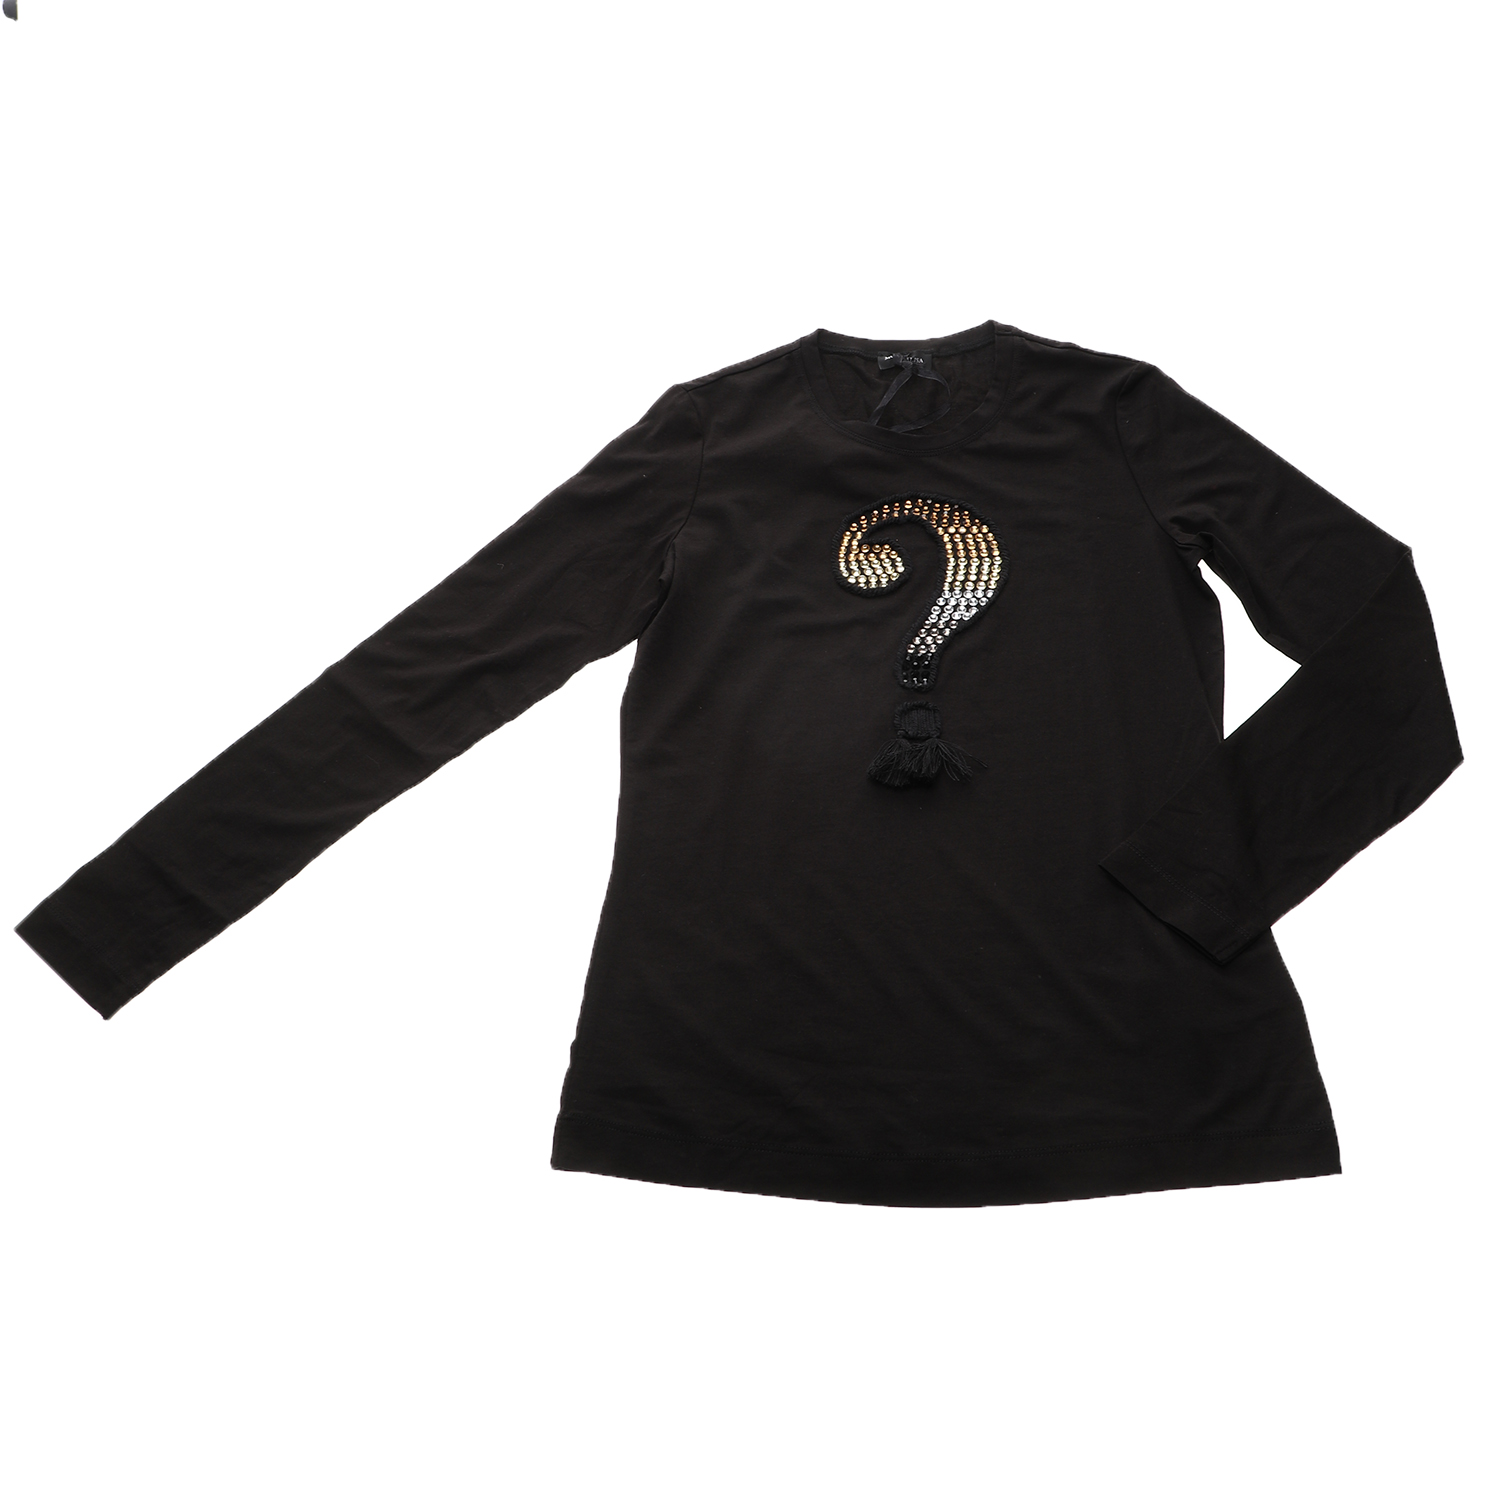 Παιδικά/Girls/Ρούχα/Μπλούζες Μακρυμάνικες JAKIOO - Παιδικό μακρυμάνικη μπλούζα JAKIOO STAMPA+STRASS μαύρη